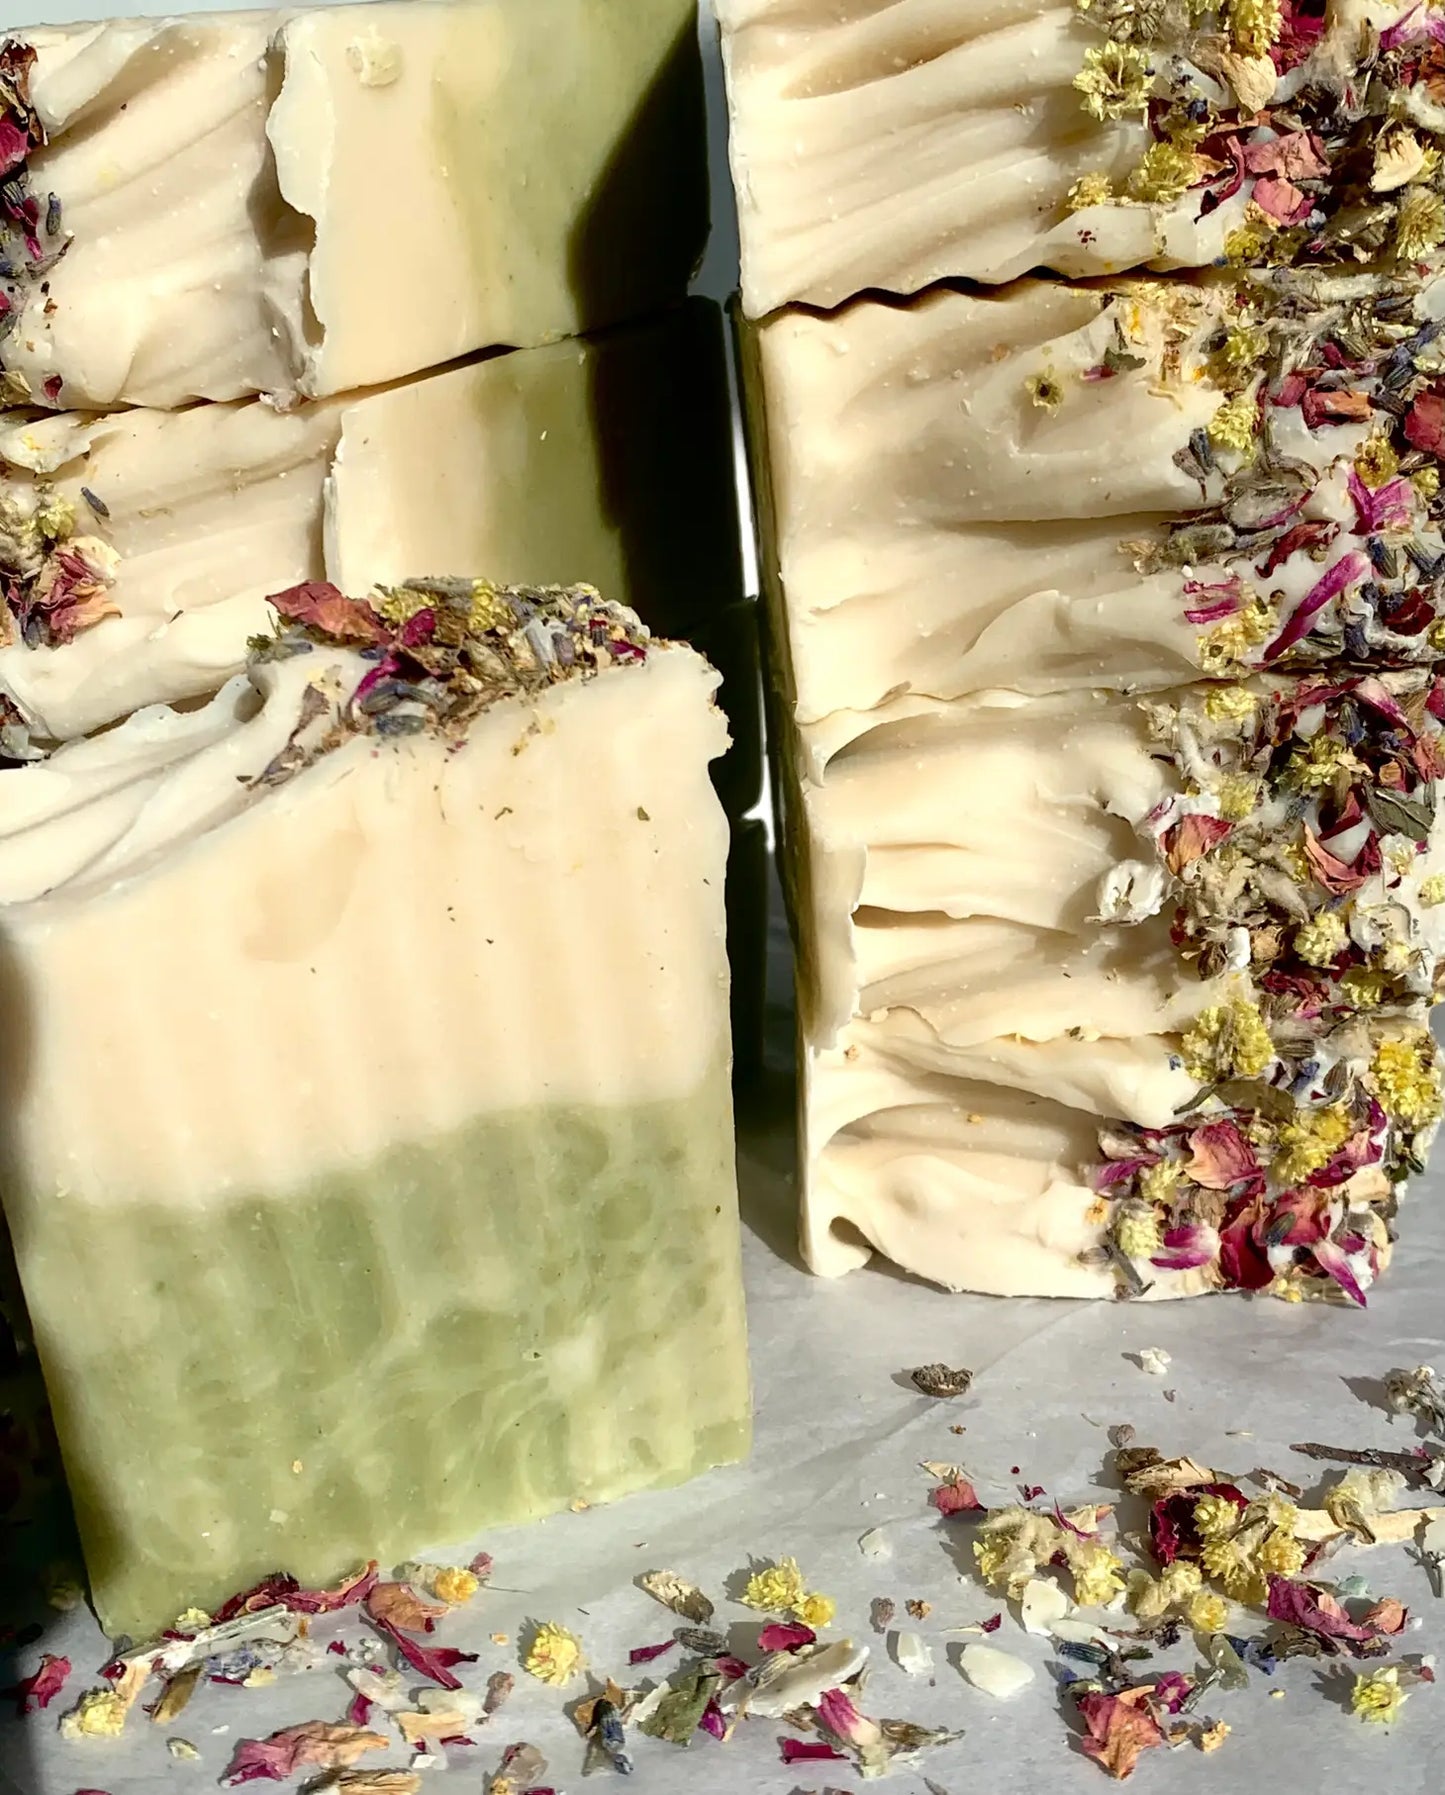 Burlap Soap Co - “Wildflowers” Lavender Goats Milk Soap